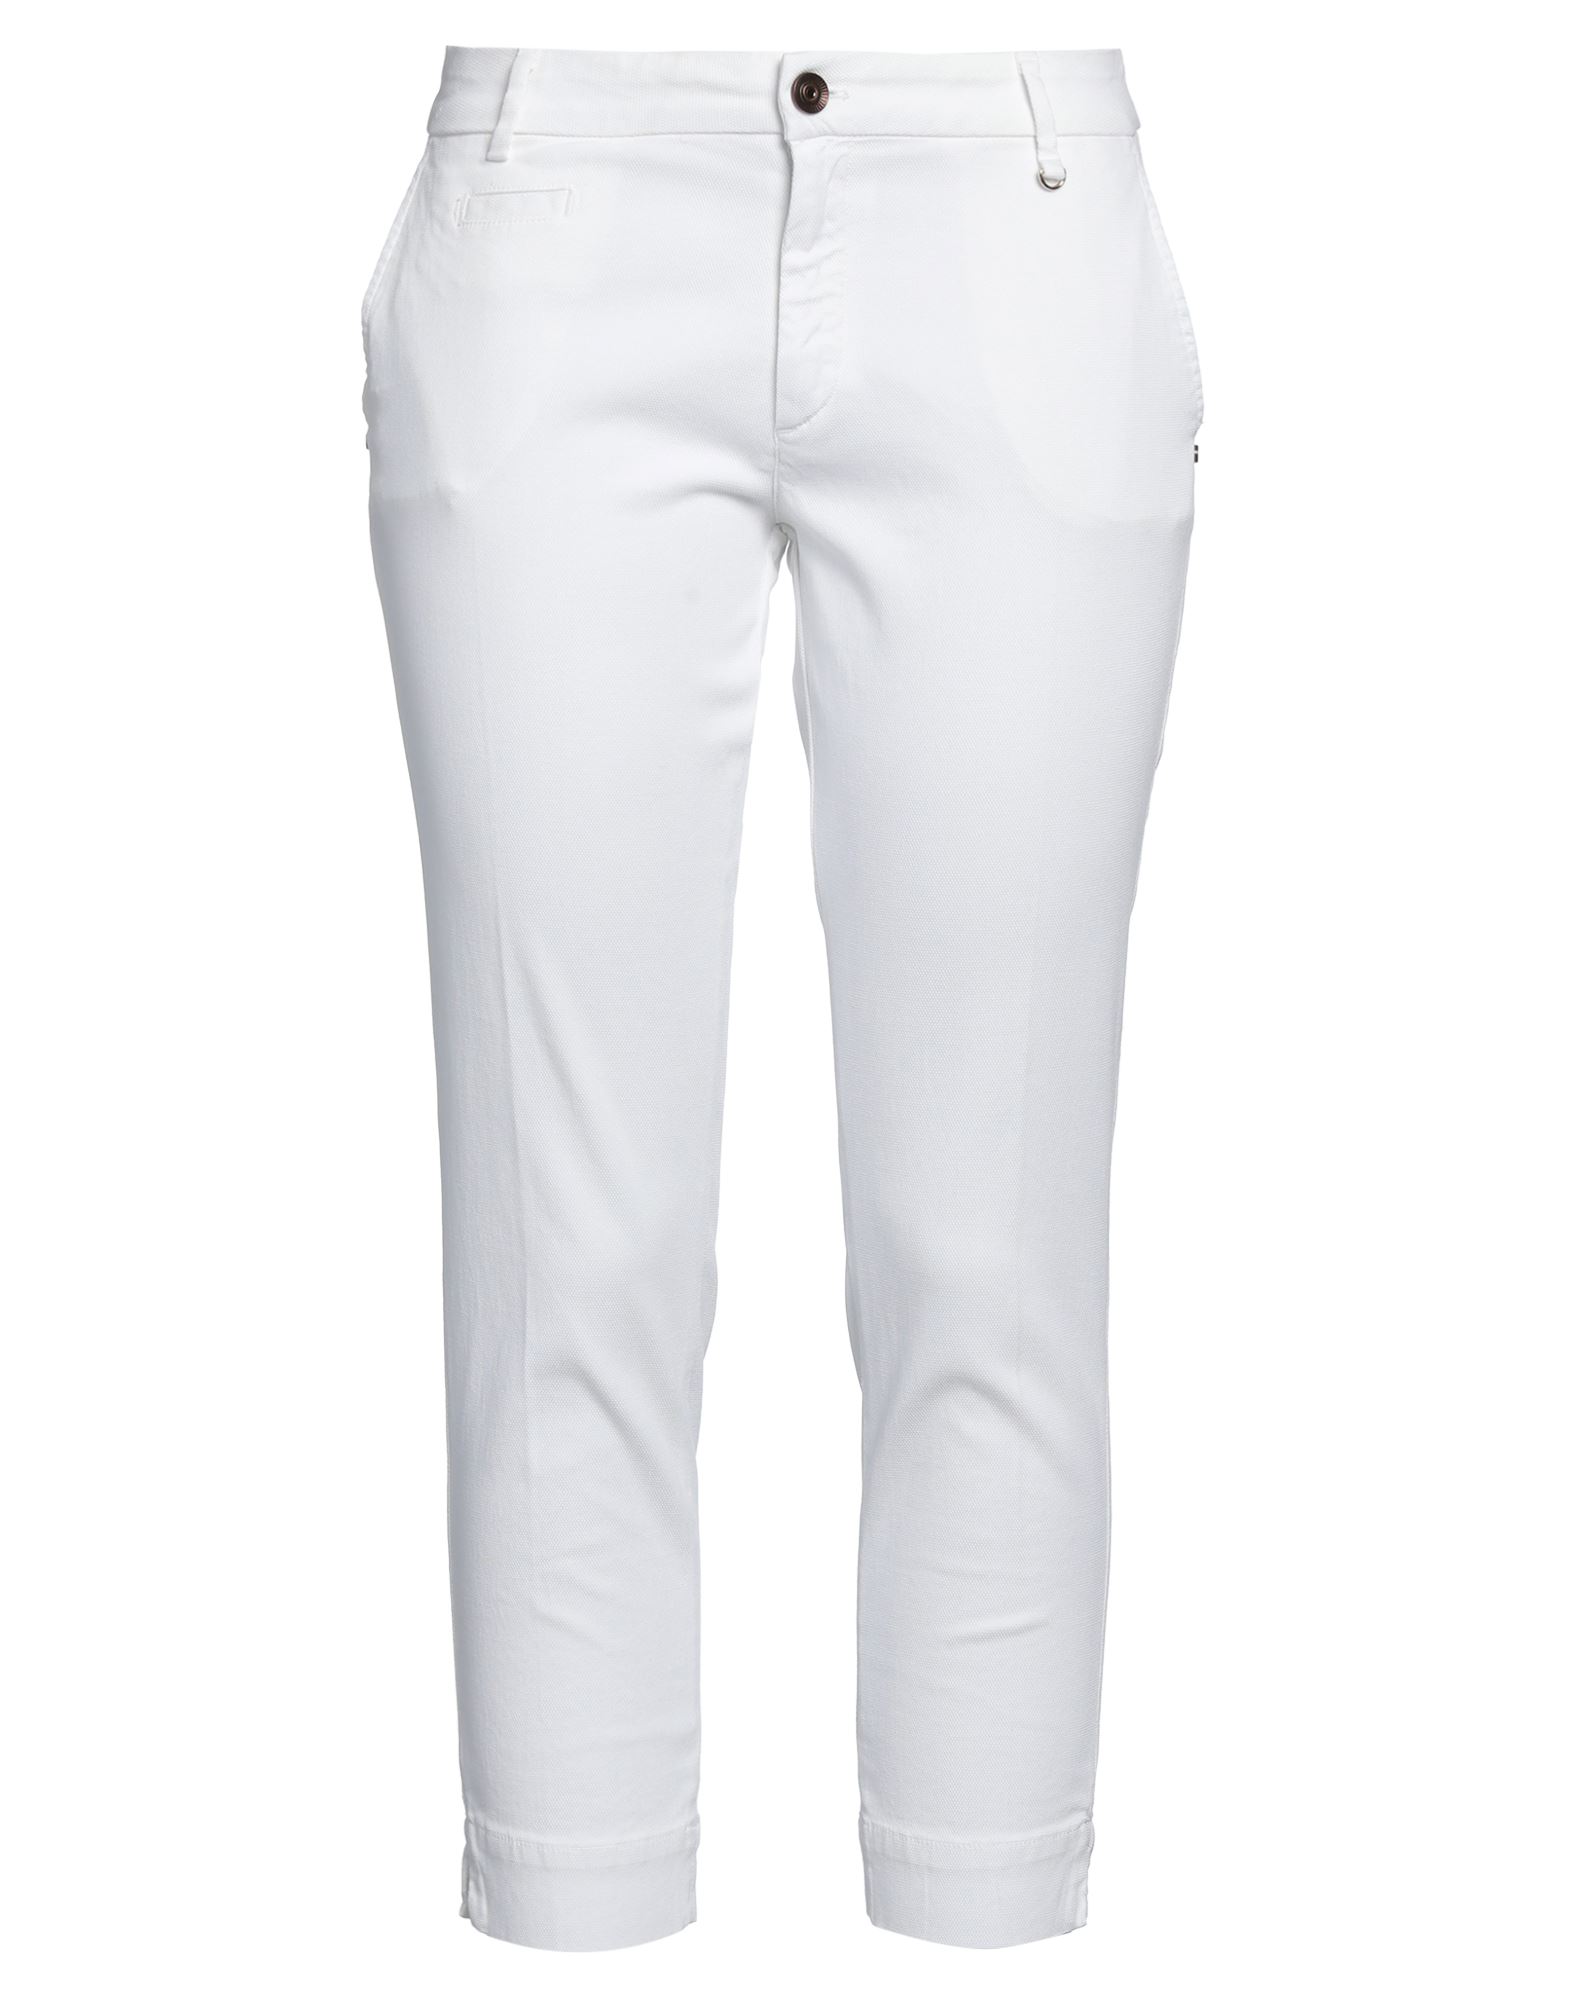 Shop Mason's Woman Cropped Pants White Size 4 Cotton, Lyocell, Elastane